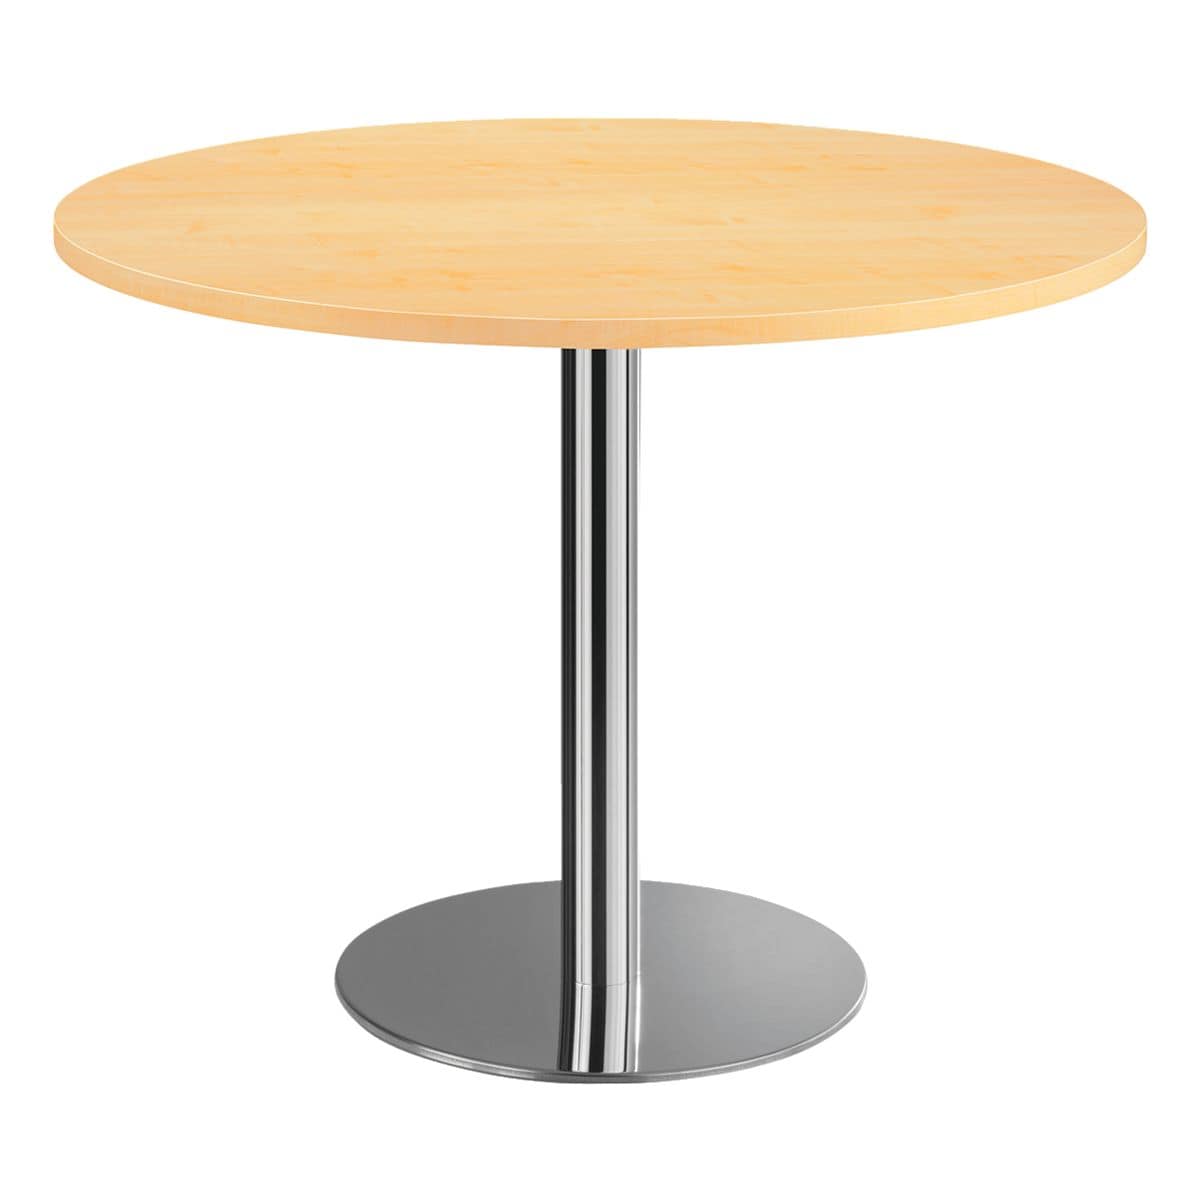 Стол высота 75 см. Стол column d80 White. Стол Tulip d80 белый. Aro стол Берлин круглый сталь стекло, 60 x 60 x 70см. Стол барный Signal b100 d60 см.